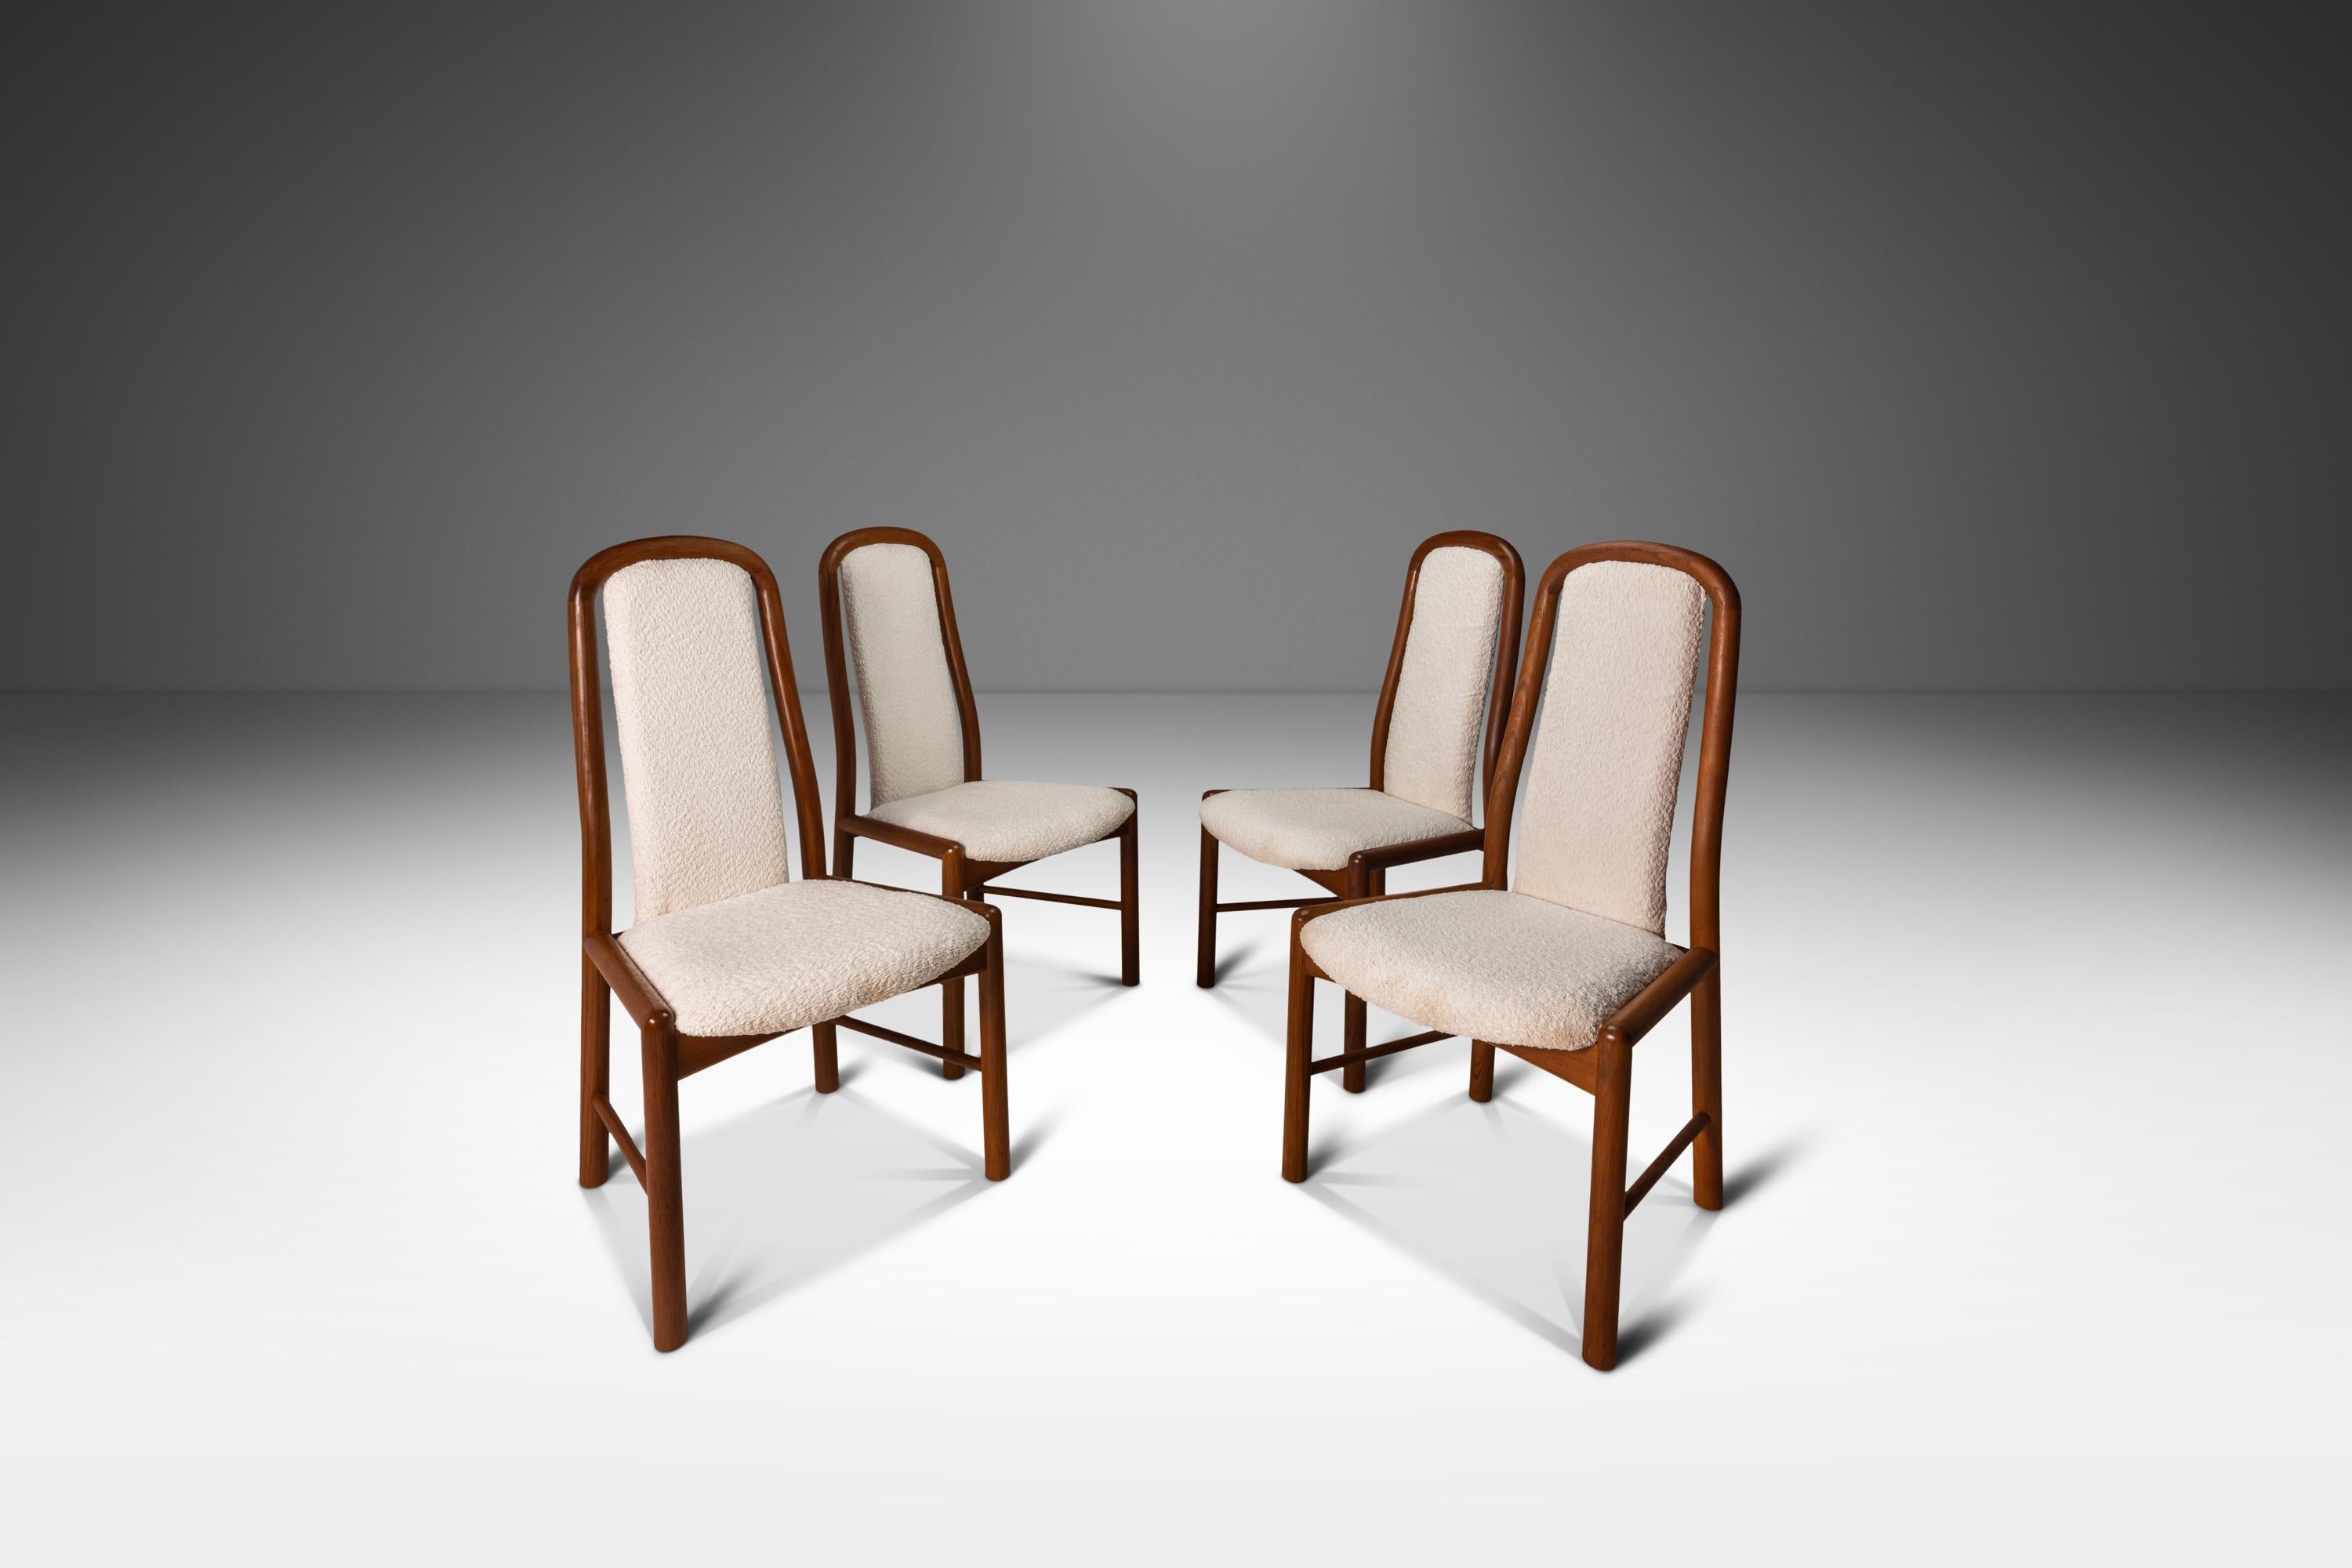 Voici un ensemble de quatre chaises de salle à manger de luxe qui incarnent l'essence du design scandinave. Conçues par Benny Linden, ces chaises sont la combinaison parfaite de la fonction et de la forme, s'inspirant à la fois d'Uldum Møbelfabrik